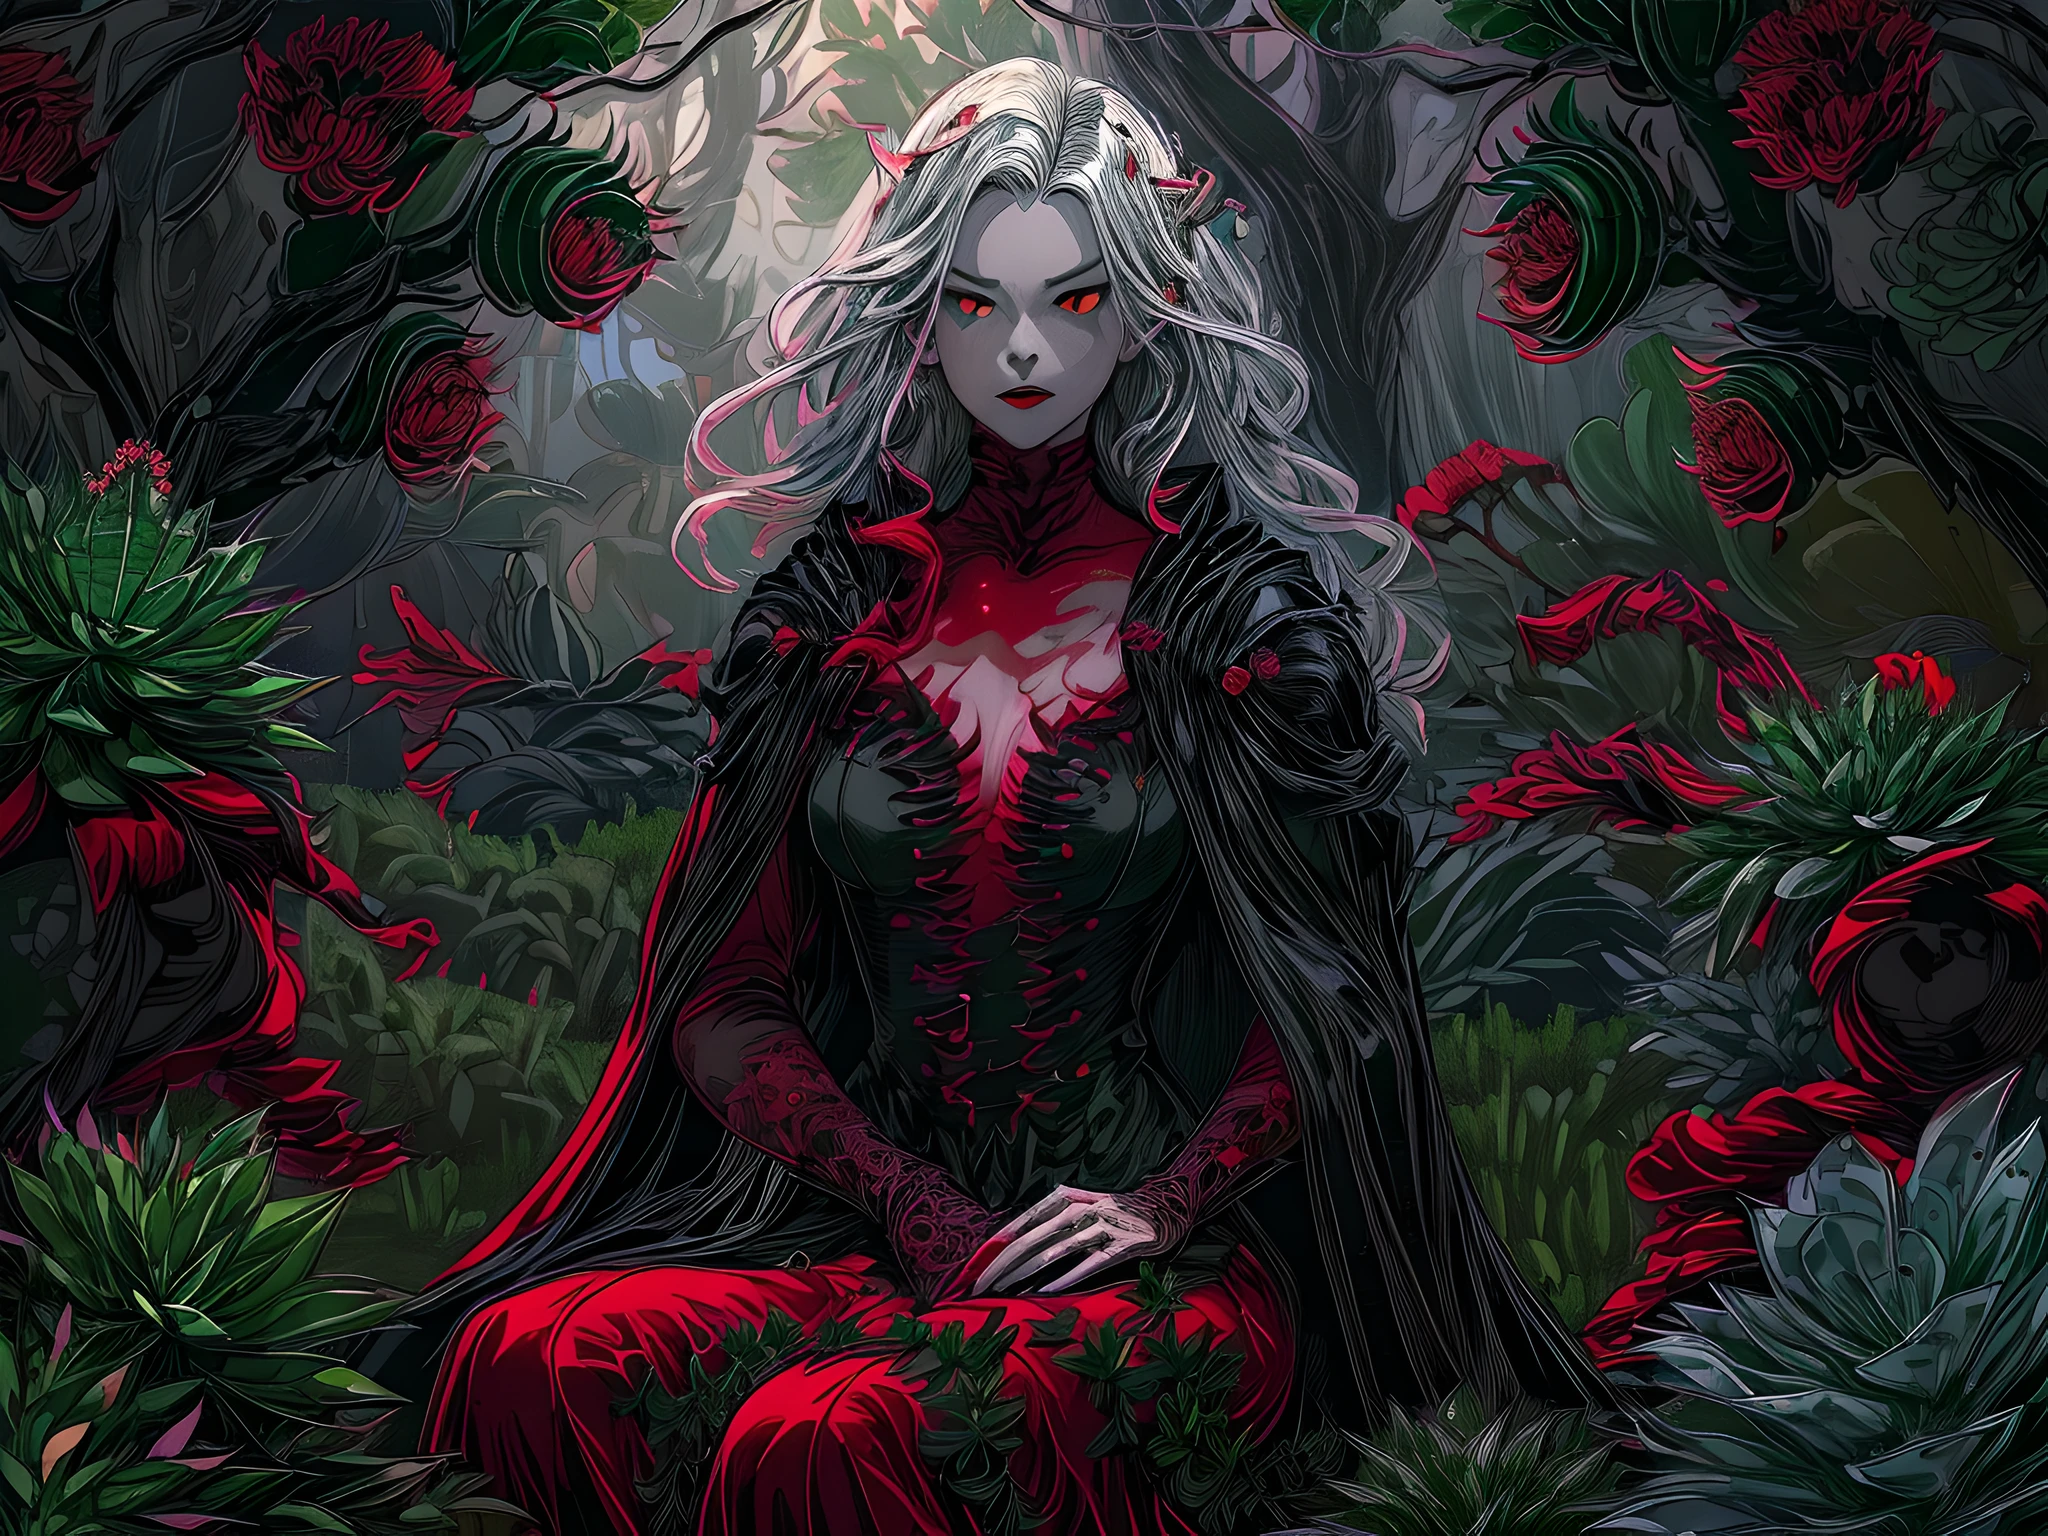 picture of a vampire woman พักผ่อนใน a (สีดำ:1.2) และ (สีแดง:1.2) coloสีแดง succulents meadow, เต็มตัว, สวยงามประณีต (มีรายละเอียดมาก, ผลงานชิ้นเอก, คุณภาพดีที่สุด: 1.4) หญิงแวมไพร์หญิง, มุมไดนามิก (รายละเอียดดีที่สุด, ผลงานชิ้นเอก, คุณภาพดีที่สุด), มีรายละเอียดมาก face (มีรายละเอียดมาก, ผลงานชิ้นเอก, คุณภาพดีที่สุด), เป็นผู้หญิงเป็นพิเศษ, ผิวสีเทา, ผมบลอนด์, ผมหยัก, สีดวงตาแบบไดนามิก, ดวงตาเย็นชา, ดวงตาที่เร่าร้อน, ดวงตาที่รุนแรง, dark สีแดง lips, [เขี้ยว], สวมชุดสีขาว, ชุดเดรสสไตล์หรูหรา (มีรายละเอียดมาก, ผลงานชิ้นเอก, คุณภาพดีที่สุด), สวมเสื้อคลุมสีน้ำเงิน (มีรายละเอียดมาก, ผลงานชิ้นเอก, คุณภาพดีที่สุด), เสื้อคลุมยาว, เสื้อคลุมไหล (มีรายละเอียดมาก, ผลงานชิ้นเอก, คุณภาพดีที่สุด), สวมรองเท้าส้นสูง, พักผ่อนใน (สีดำ และ สีแดง coloสีแดง succulents meadow: 1.6), ฉ่ำหยดเลือด, full coloสีแดง, (สเปกตรัมที่สมบูรณ์แบบ: 1.3),( งานที่มีชีวิตชีวา: 1.4) vibrant shades of สีแดง, และ สีดำ) พระจันทร์ขึ้น, แสงจันทร์, เวลากลางคืน, รายละเอียดสูง, ศิลปะแฟนตาซี, RPG art คุณภาพดีที่สุด, 16ก, [มีรายละเอียดมาก], ผลงานชิ้นเอก, คุณภาพดีที่สุด, (มีรายละเอียดมาก), เต็มตัว, ถ่ายภาพมุมกว้างพิเศษ, เหมือนจริง